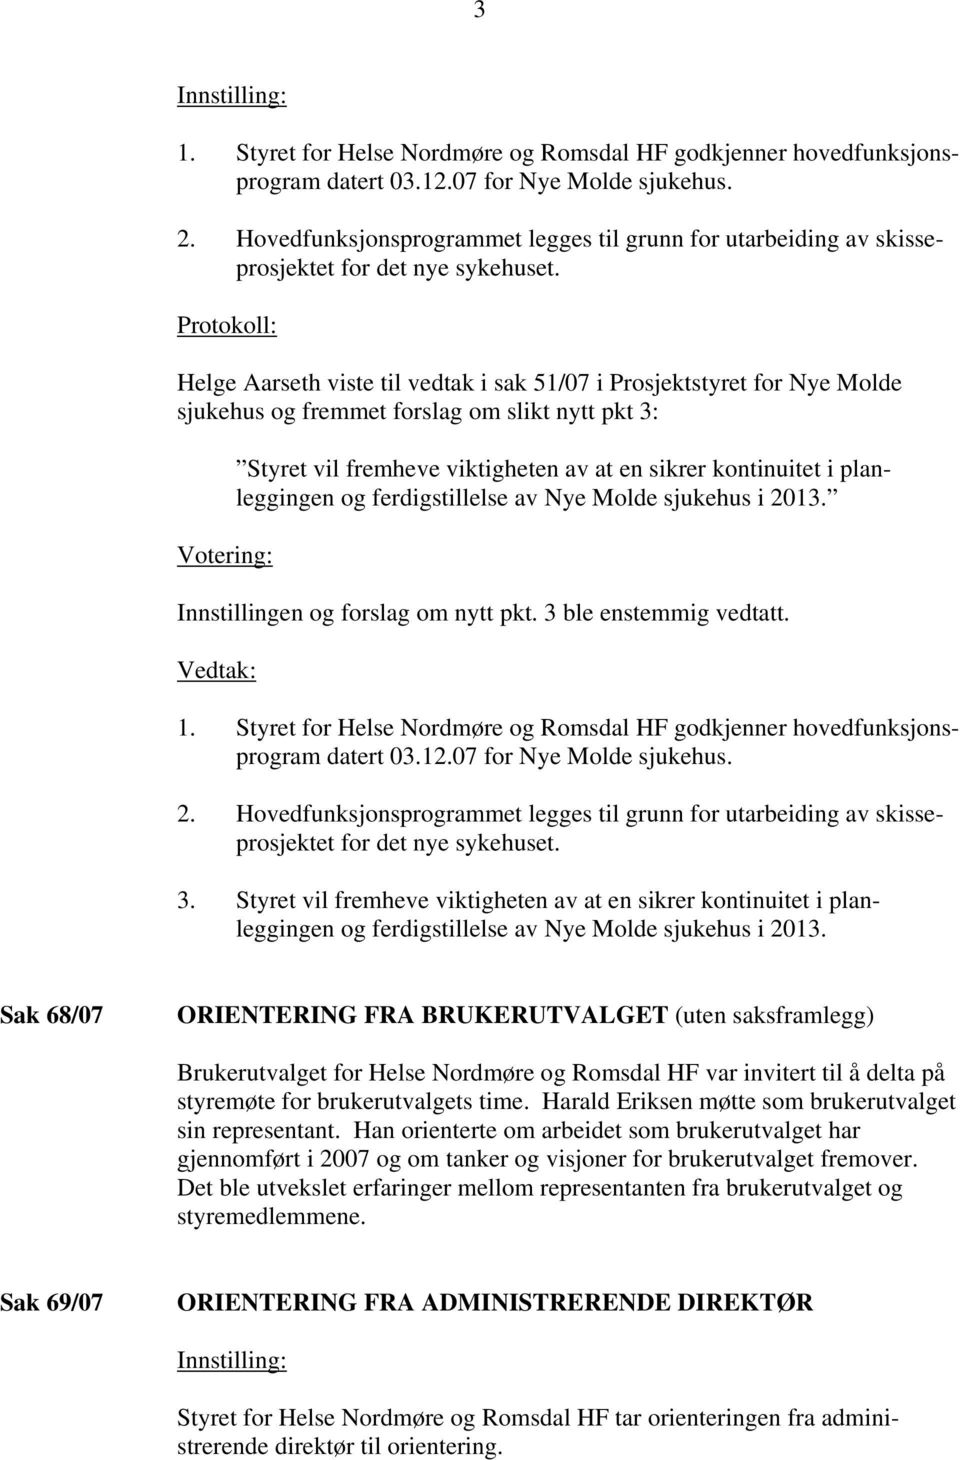 Protokoll: Helge Aarseth viste til vedtak i sak 51/07 i Prosjektstyret for Nye Molde sjukehus og fremmet forslag om slikt nytt pkt 3: Votering: Styret vil fremheve viktigheten av at en sikrer